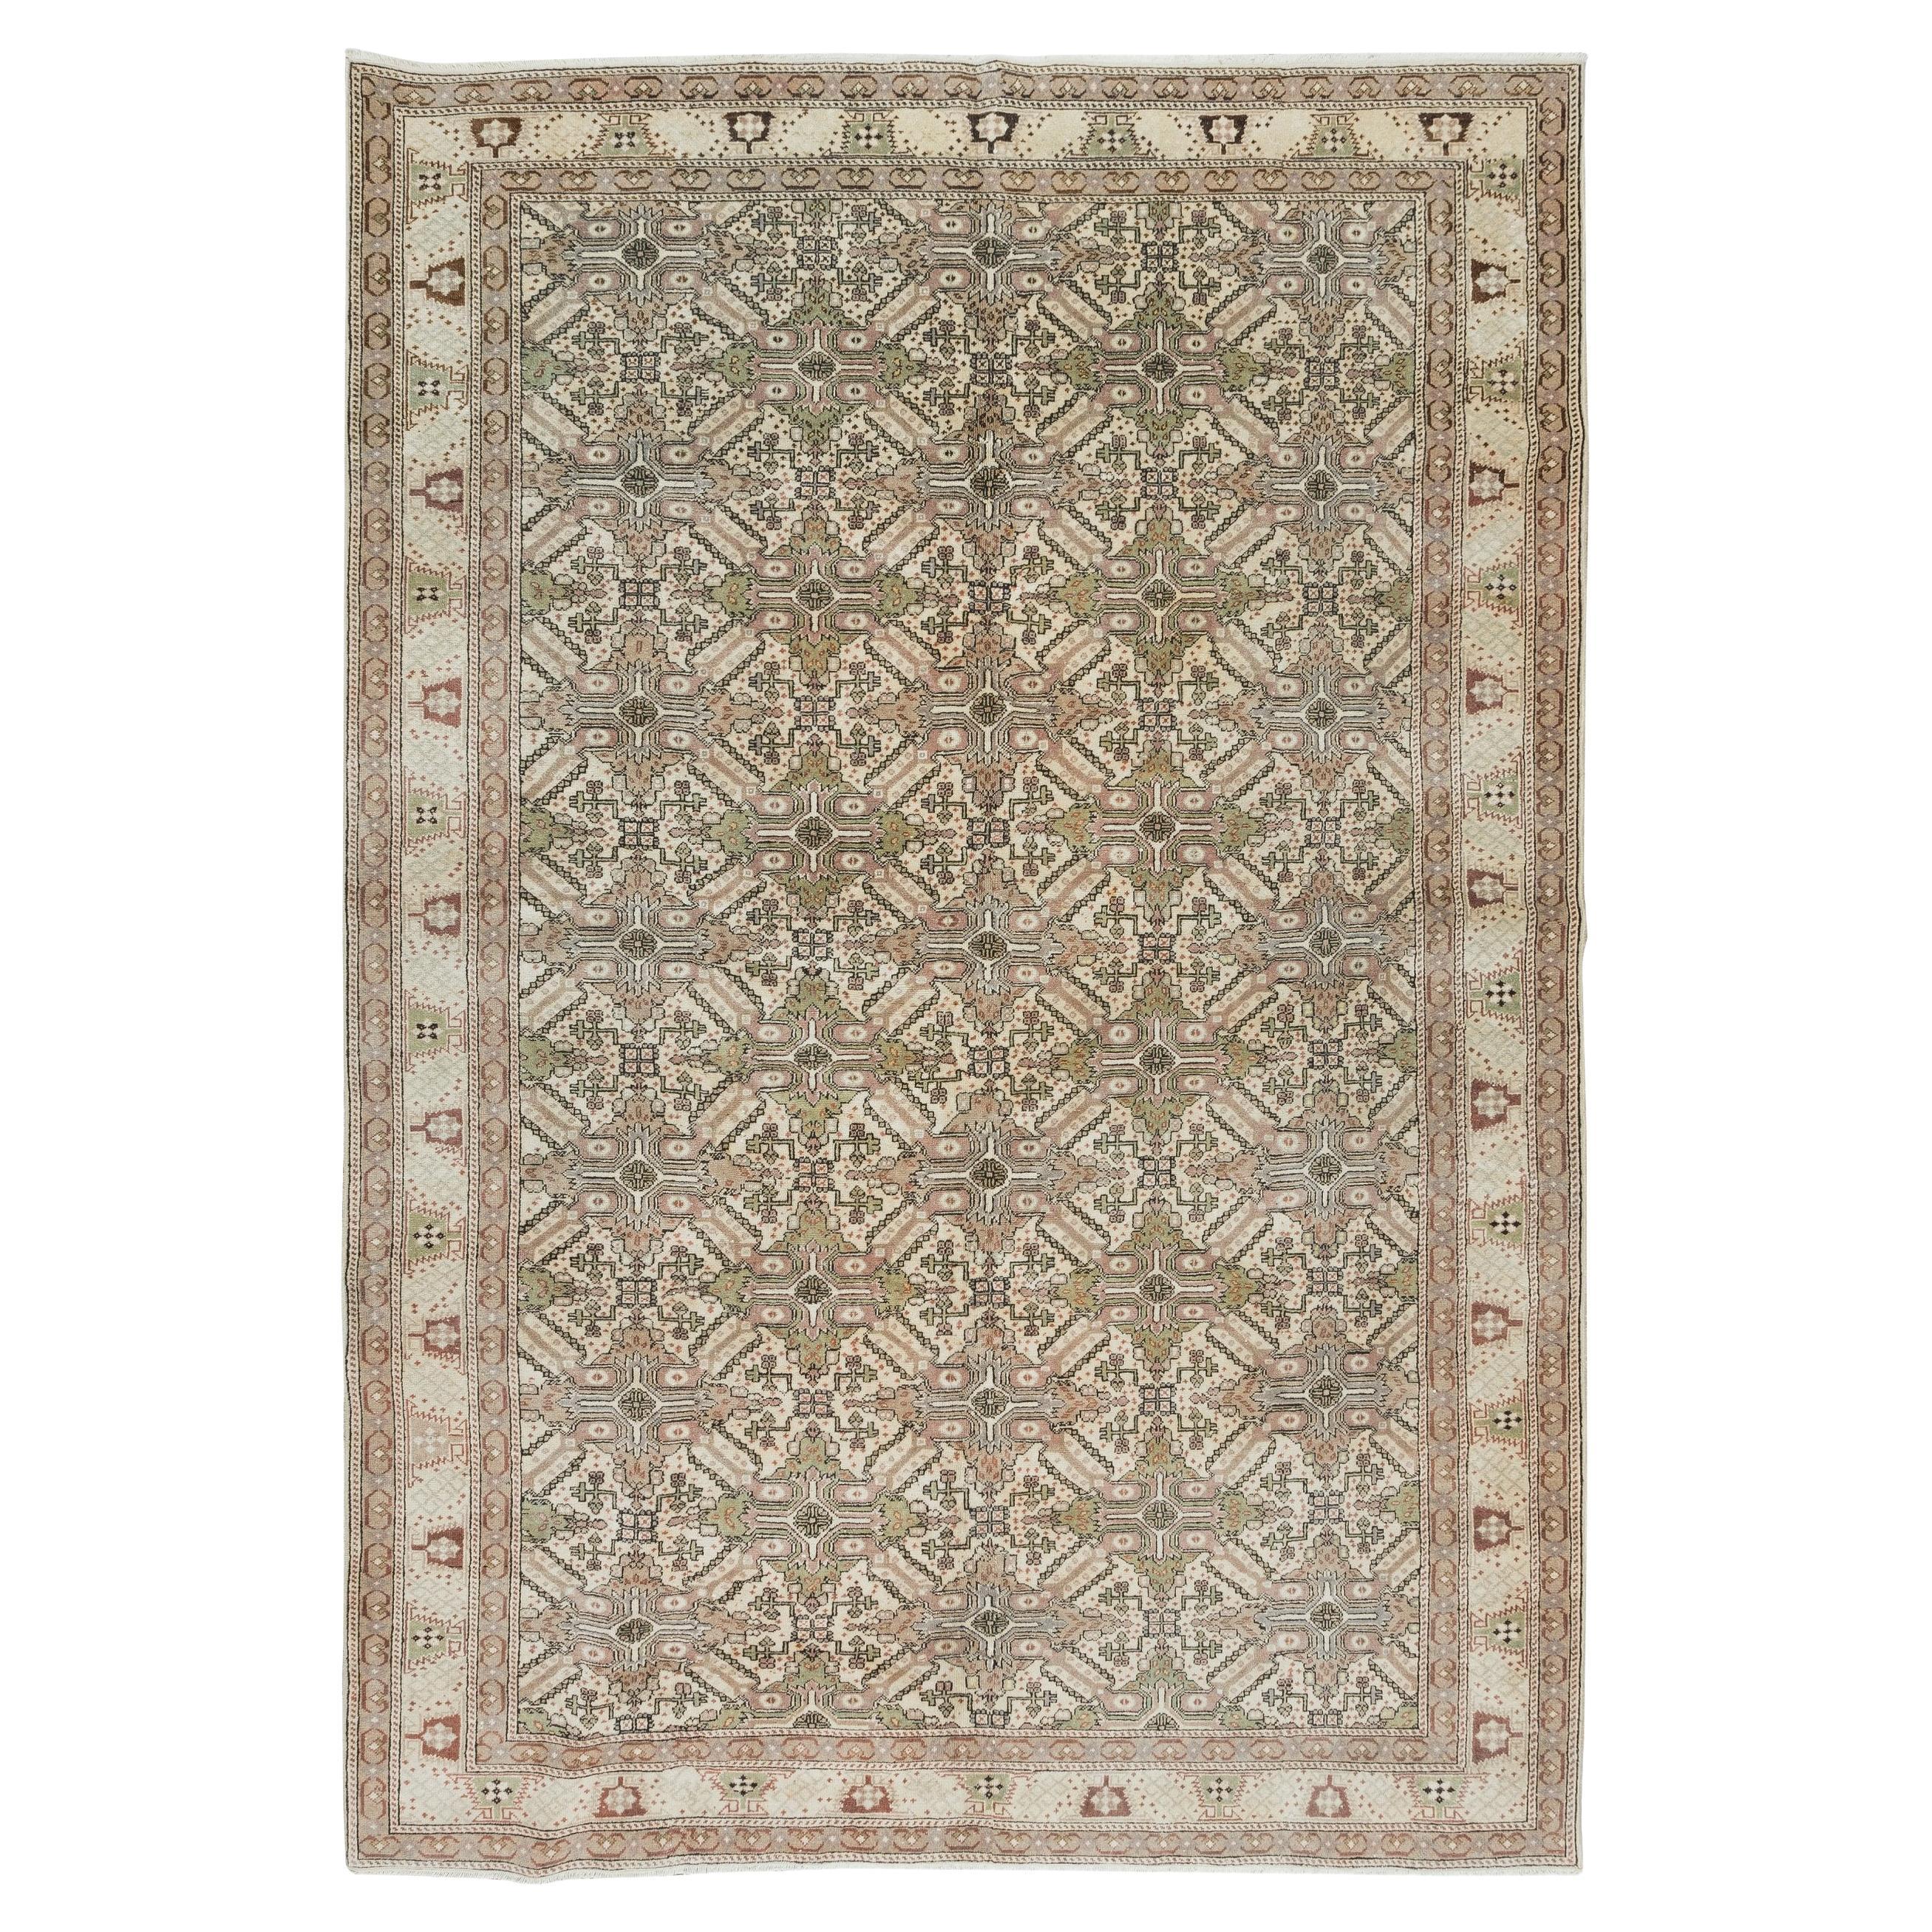 6.3x9.4 Ft Handmade Turkish Area Rug, Vintage Floral Wool Carpet (tapis de laine à motifs floraux)